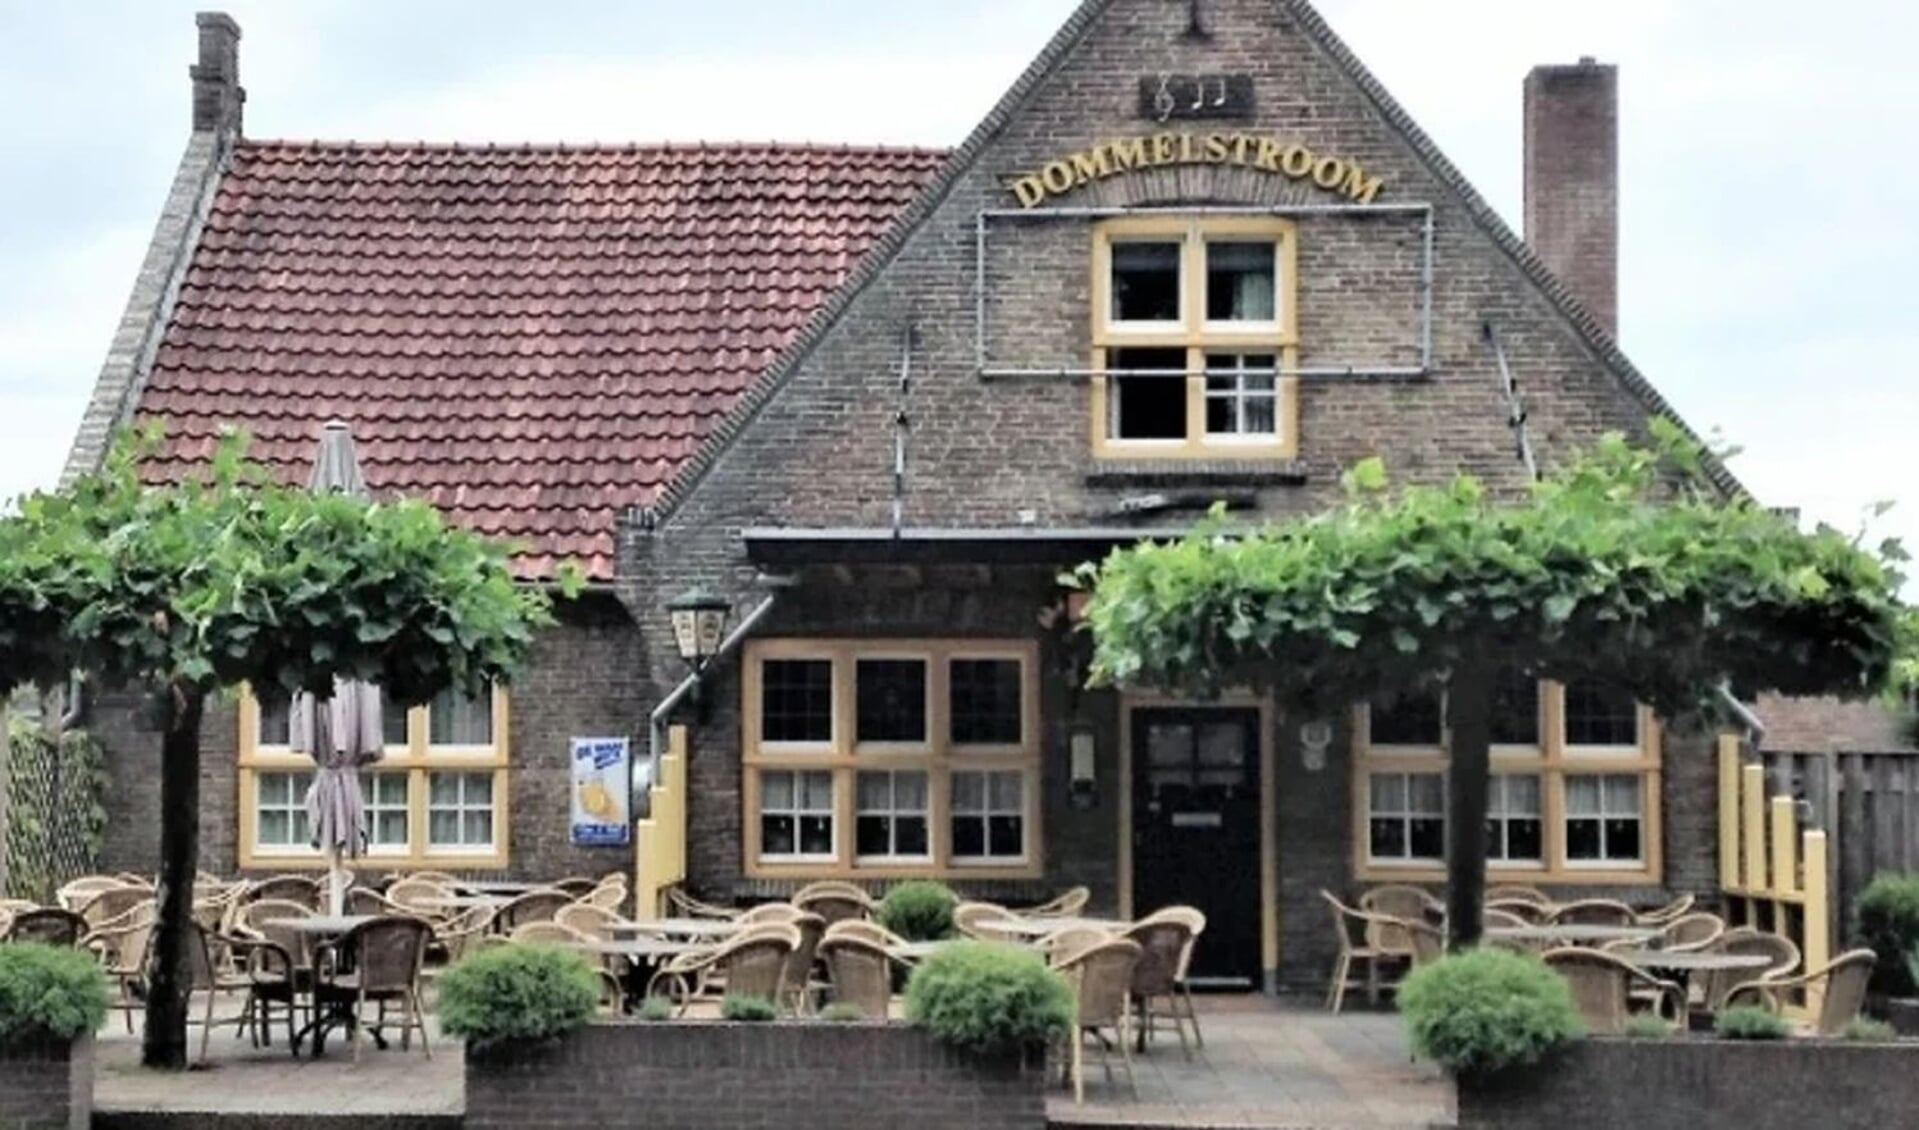 Café-zaal De Dommelstroom, het huisadres van het Alzheimer Café Valkenswaard-Waalre.